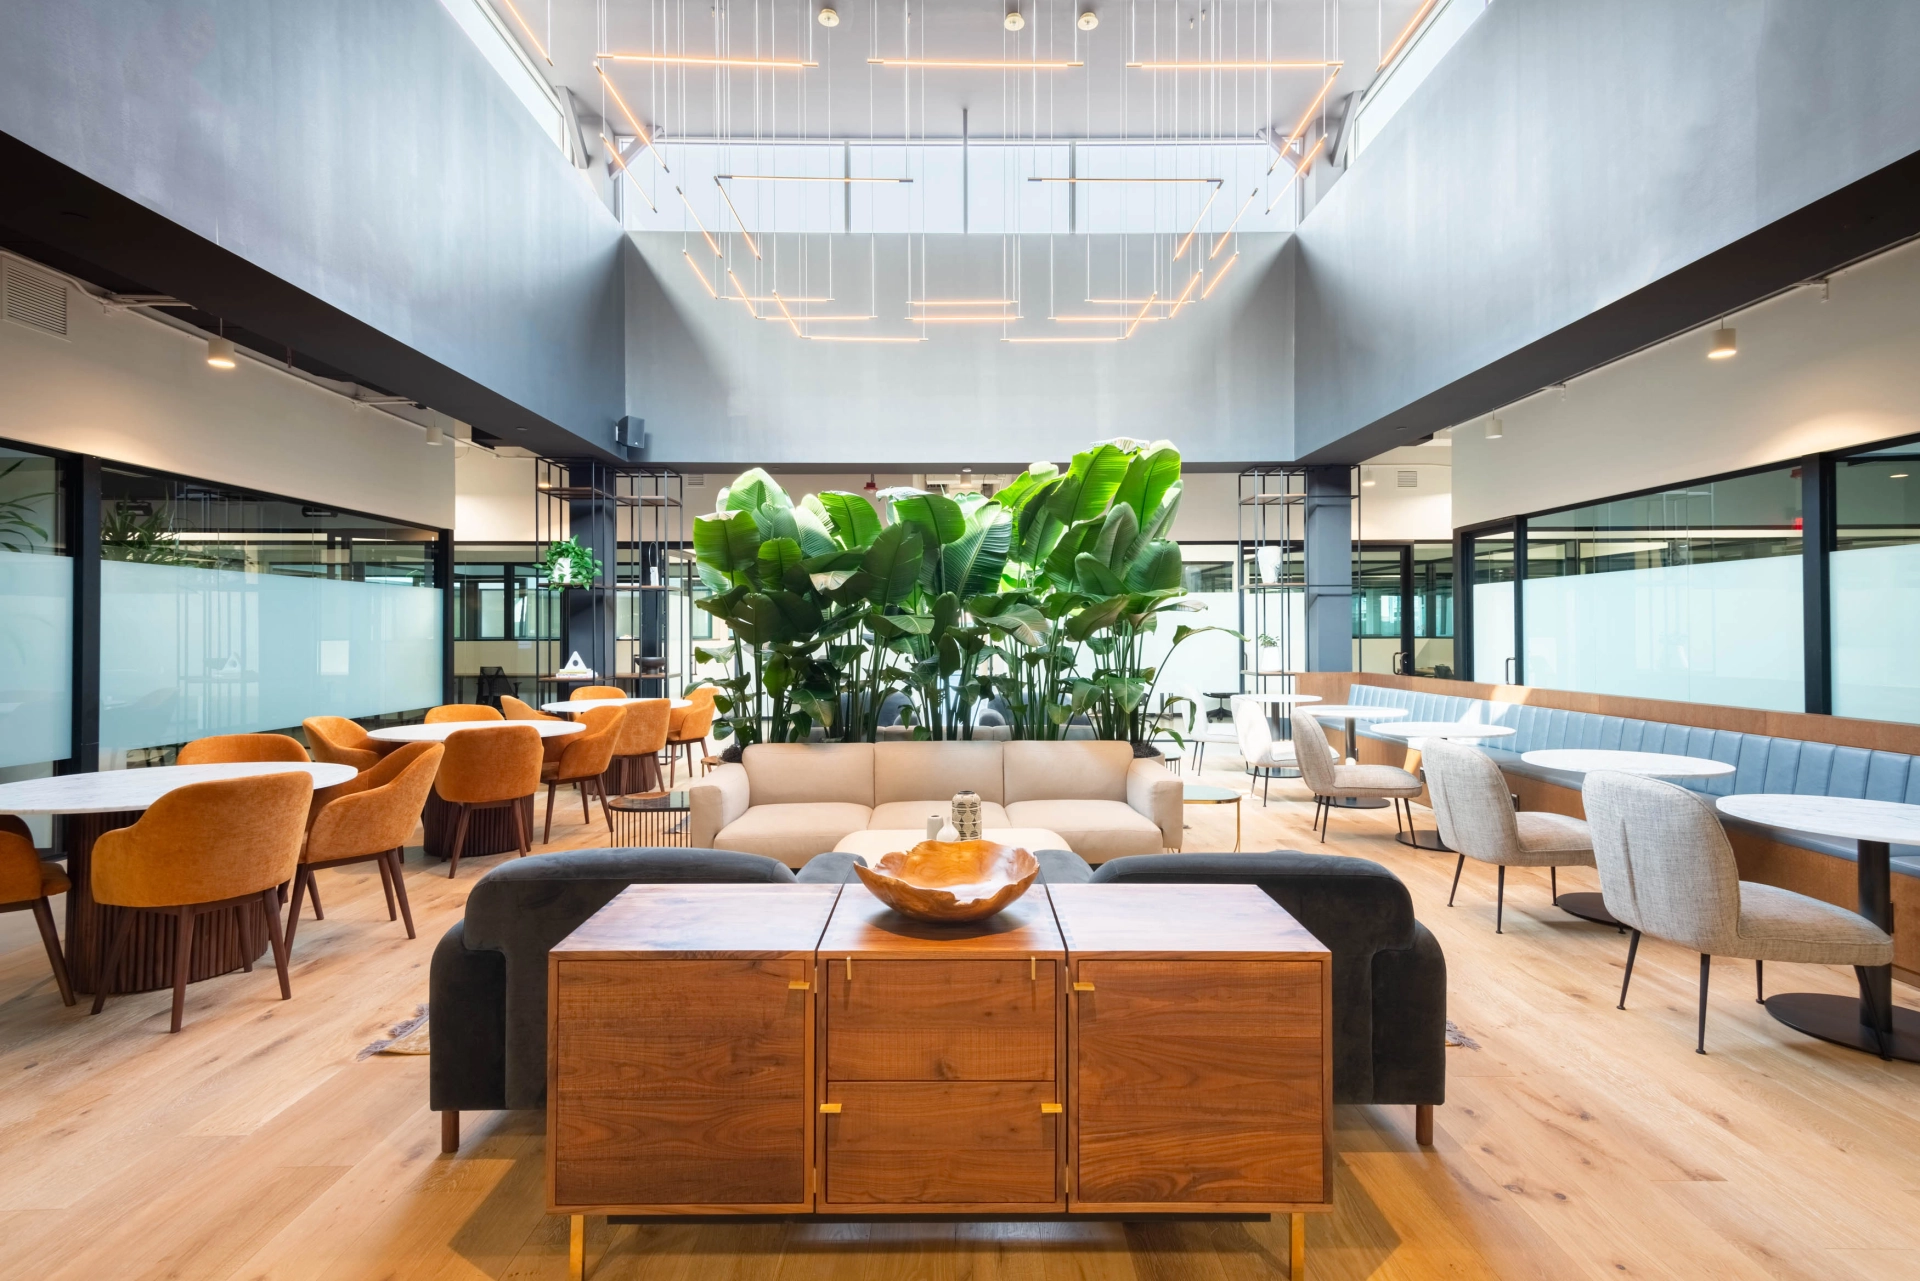 Le restaurant moderne de Short Hills propose un espace de travail de coworking accueillant avec des tables et des chaises en bois.